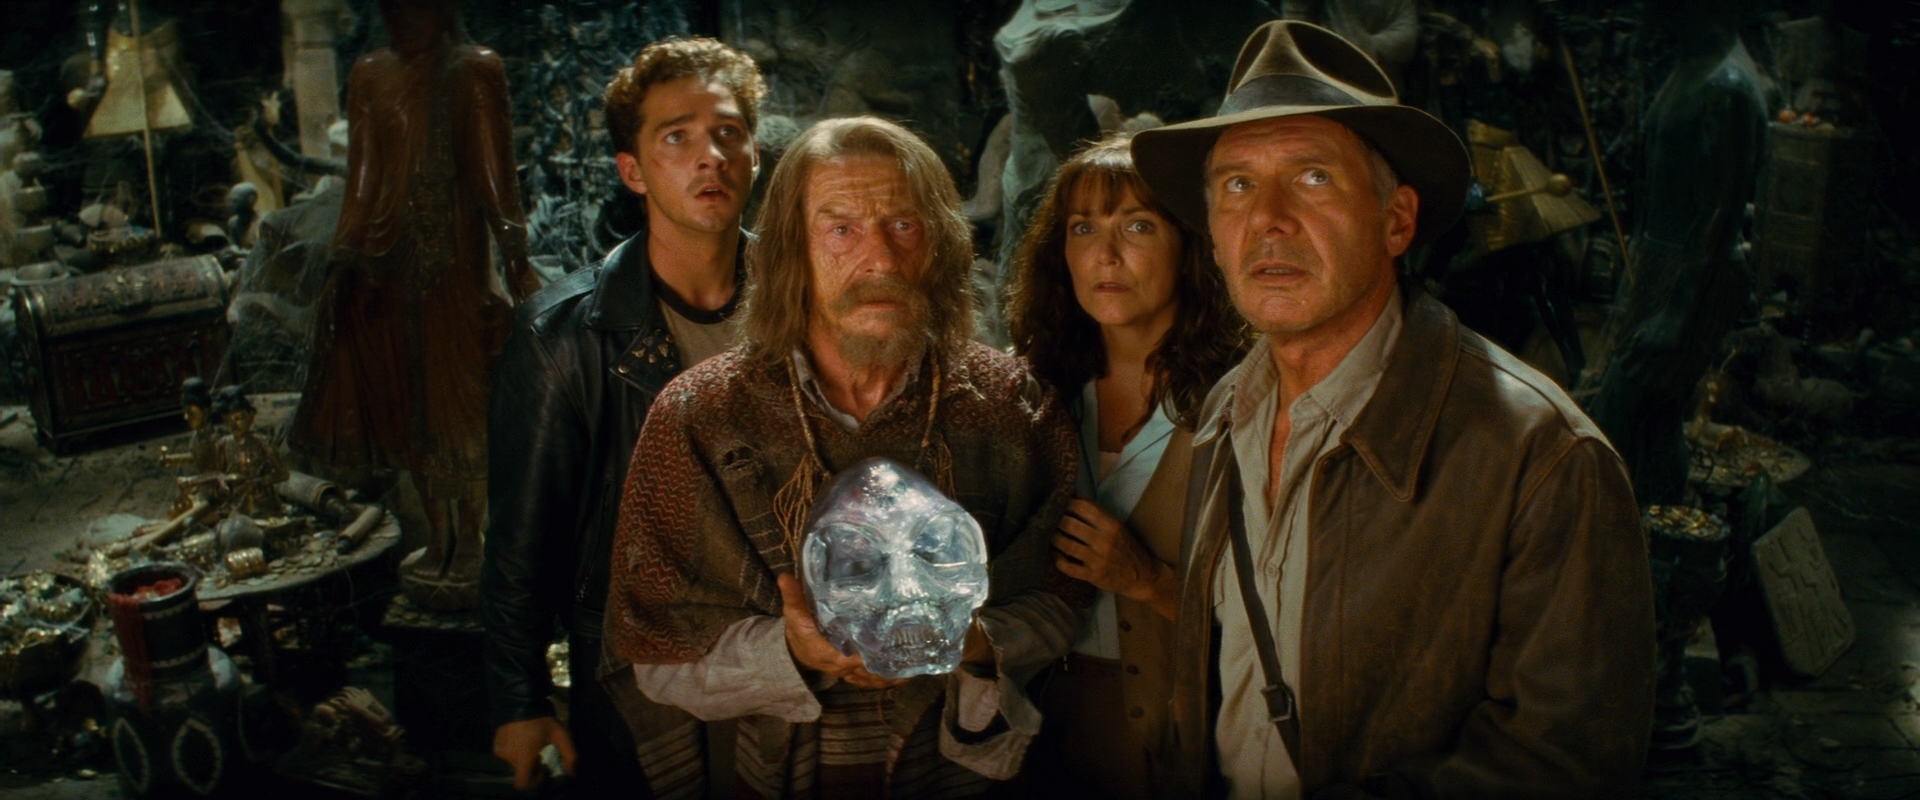 Indiana Jones e il Regno del Teschio di Cristallo (2008)